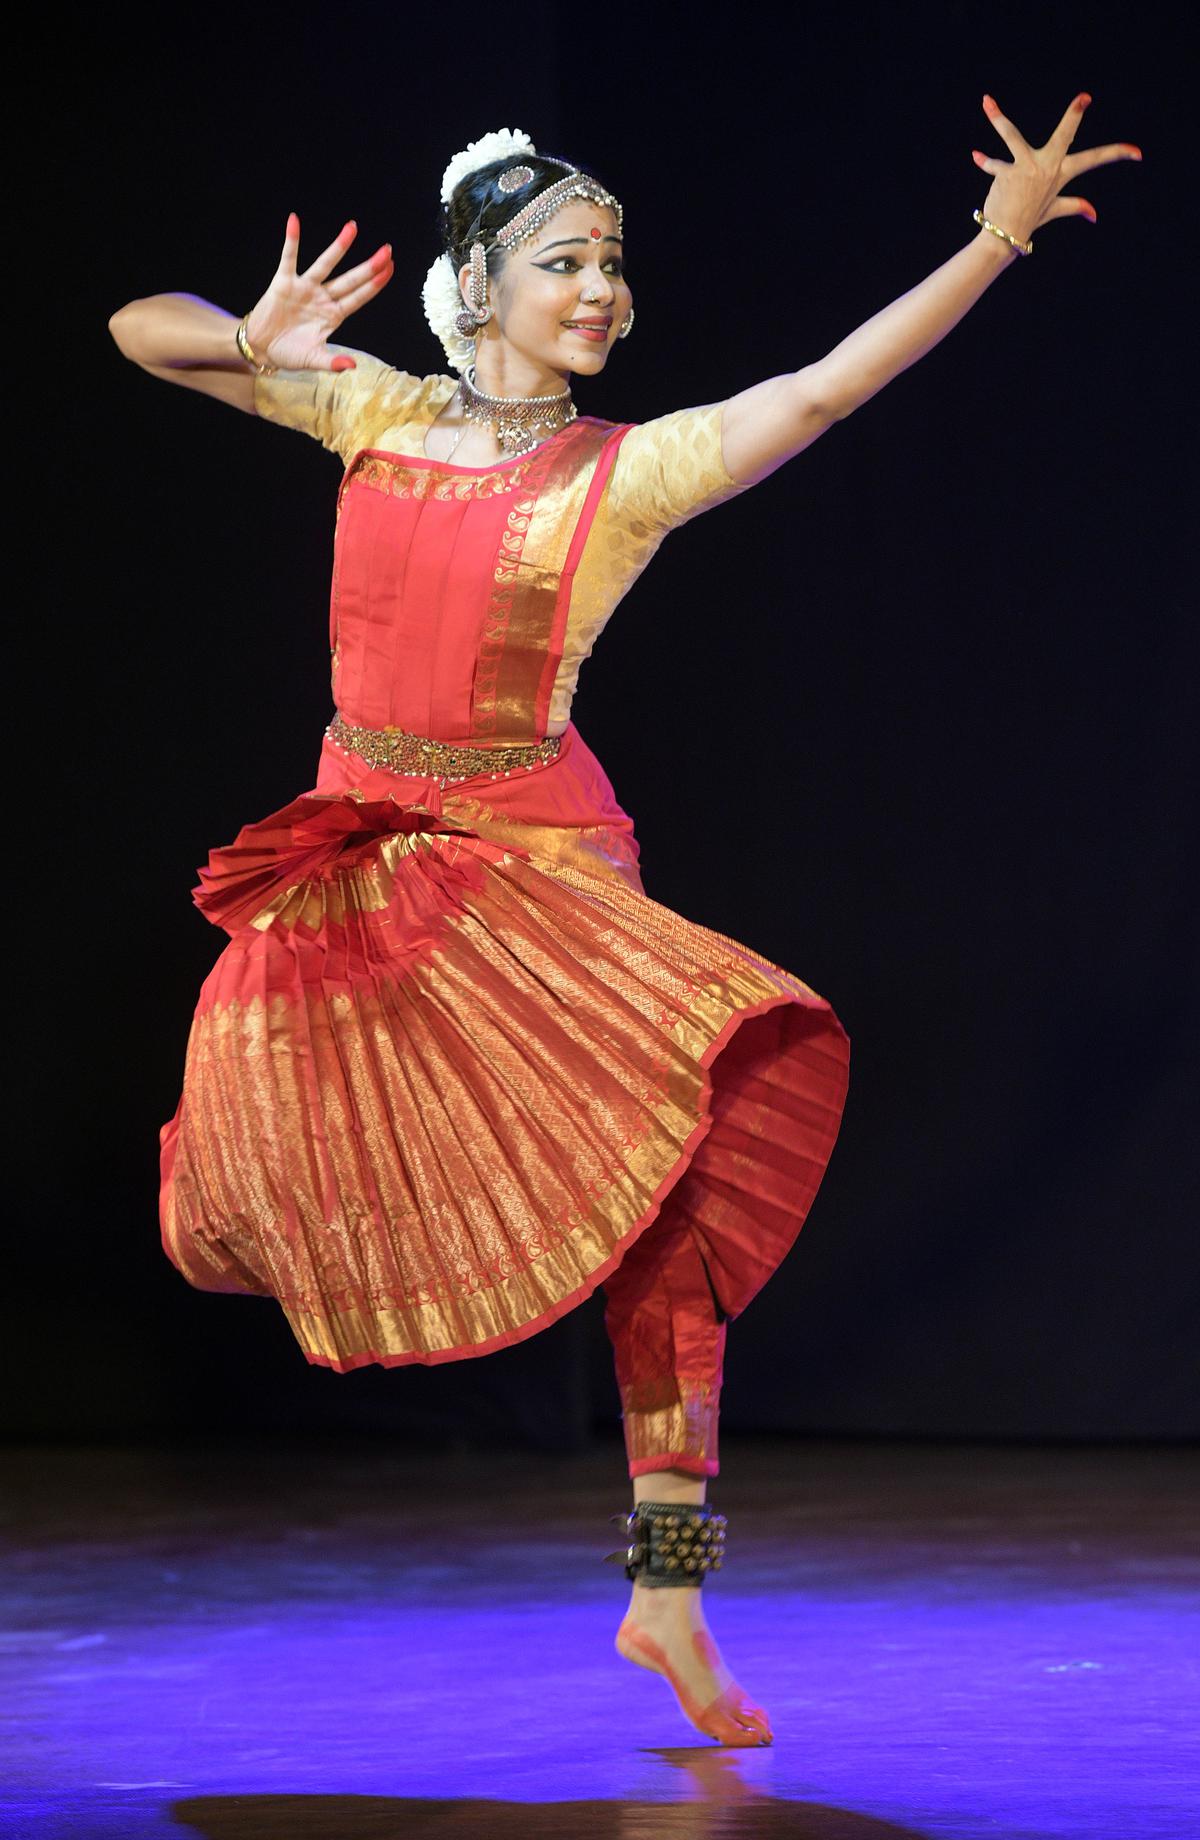 Bharatanatyam performance by Sreelatha Vinod at Sri Krishna Gana Sabha in Chennai. in 2017.